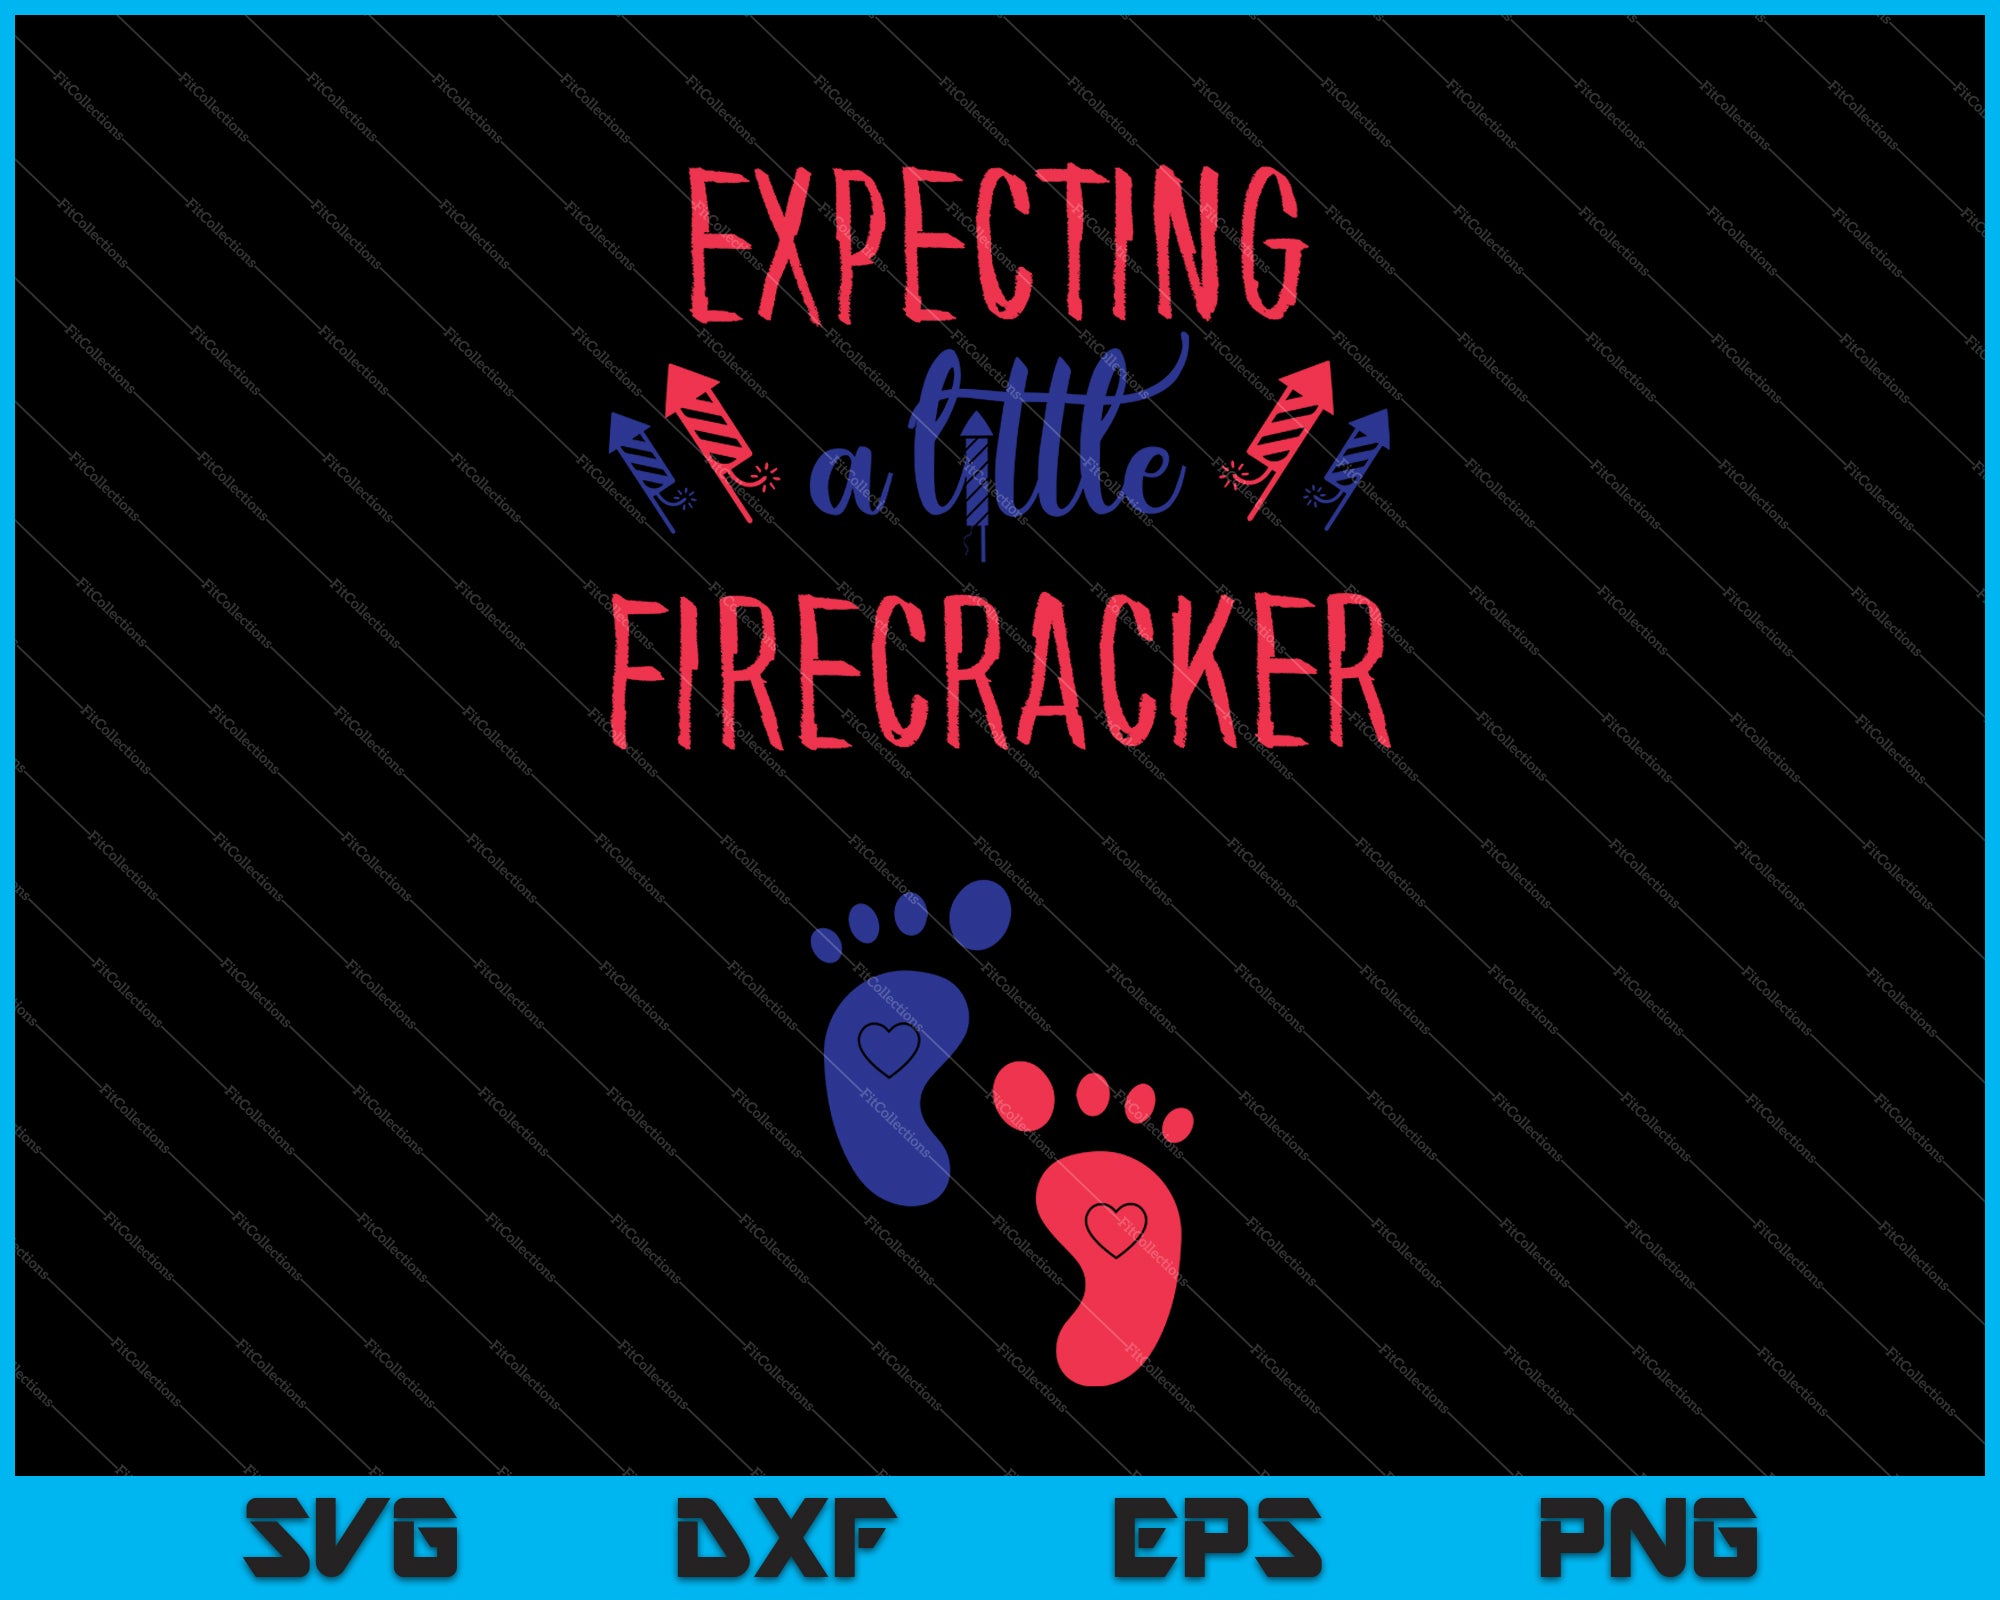 Firecrackers Softball Logo Svg